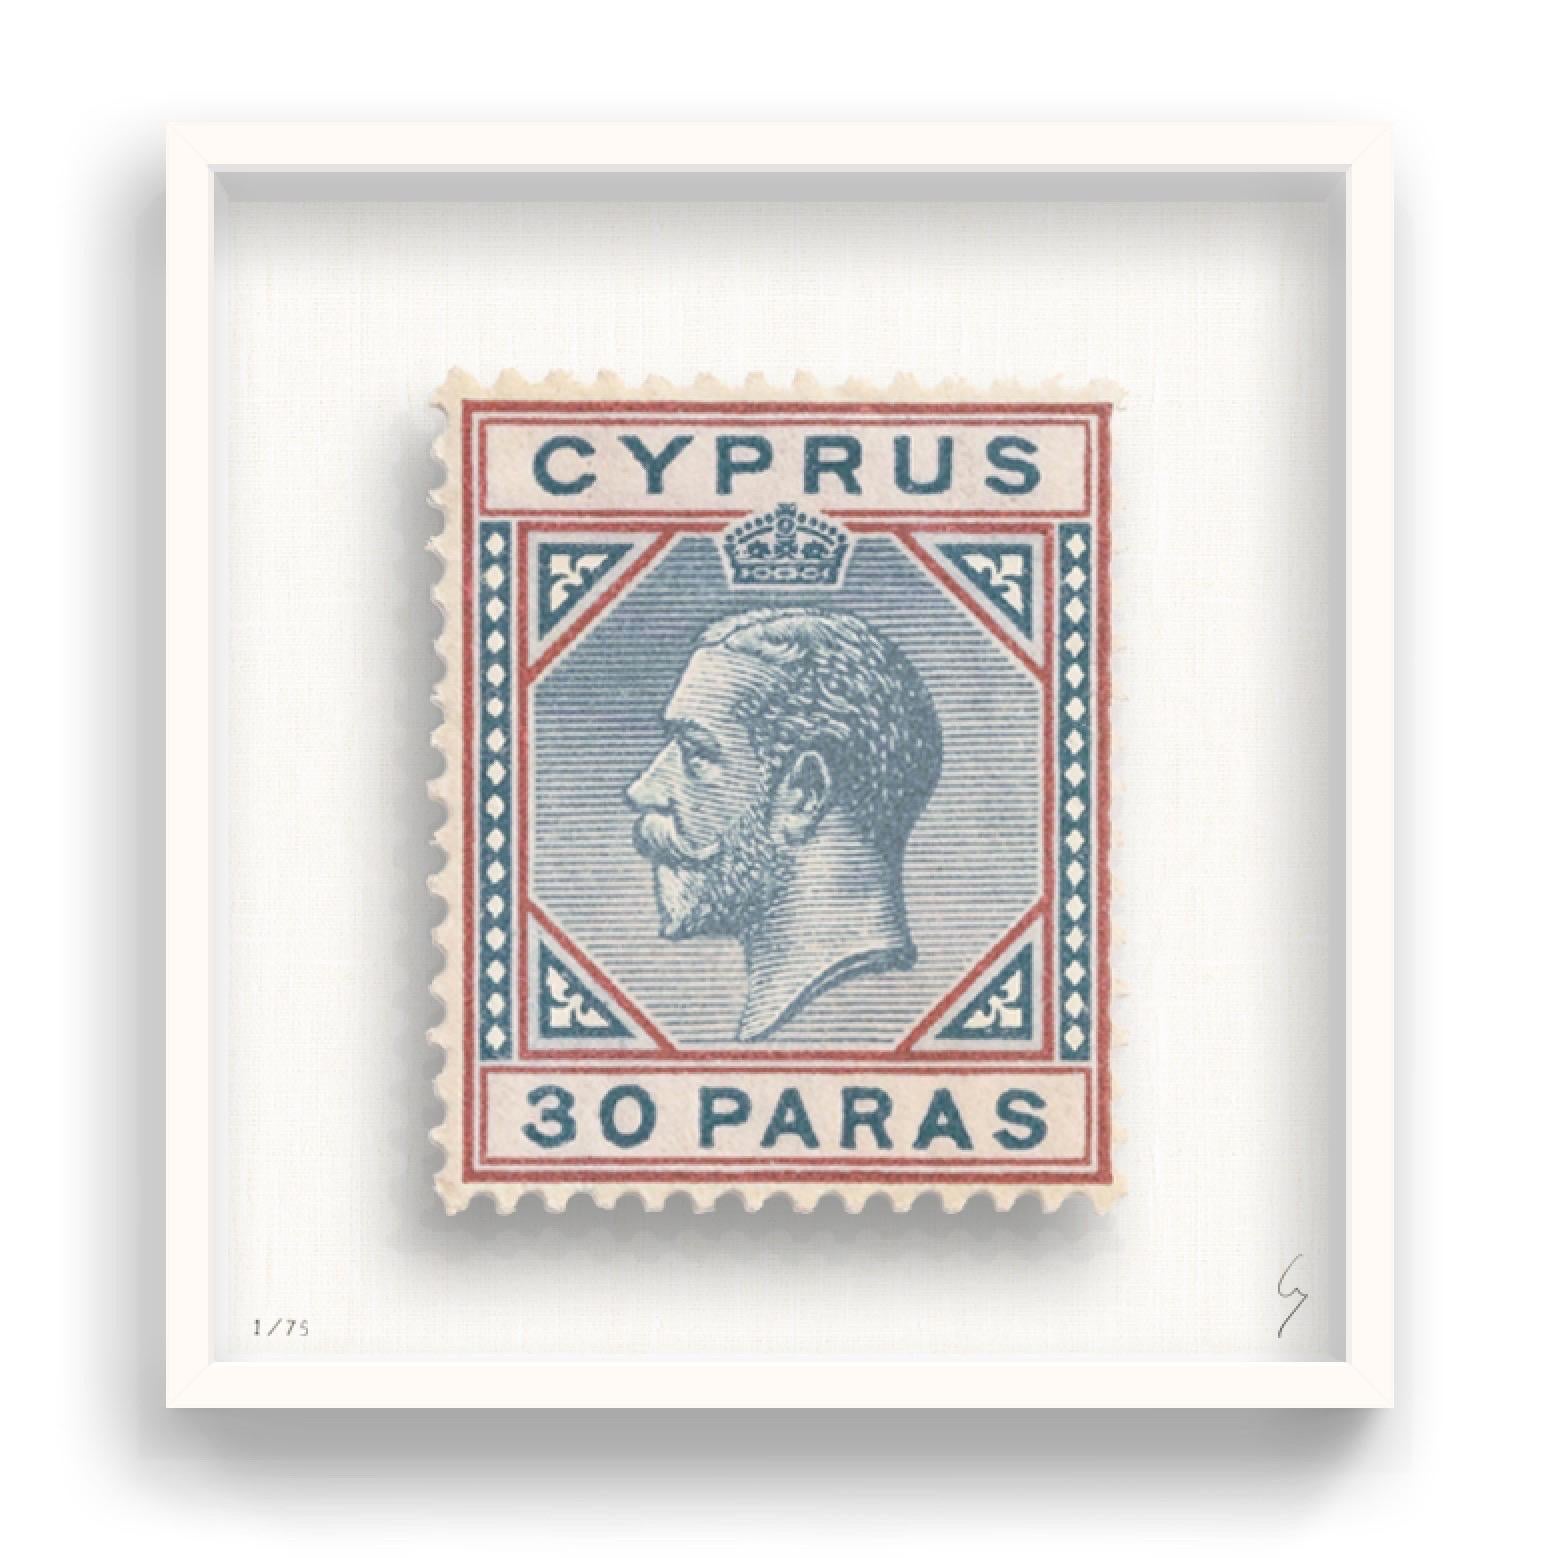 Guy Gee, Zypern (mittelgroß)

Handgravur auf 350gsm auf G.F Smith Karton
53 x 56cm (20 4/5 x 22 2/5 in)
Inklusive Rahmen 
Auflage von 75 

Jedes Kunstwerk von Guy wurde auf der Grundlage einer Originalbriefmarke digital nachgebildet. Das von Hand